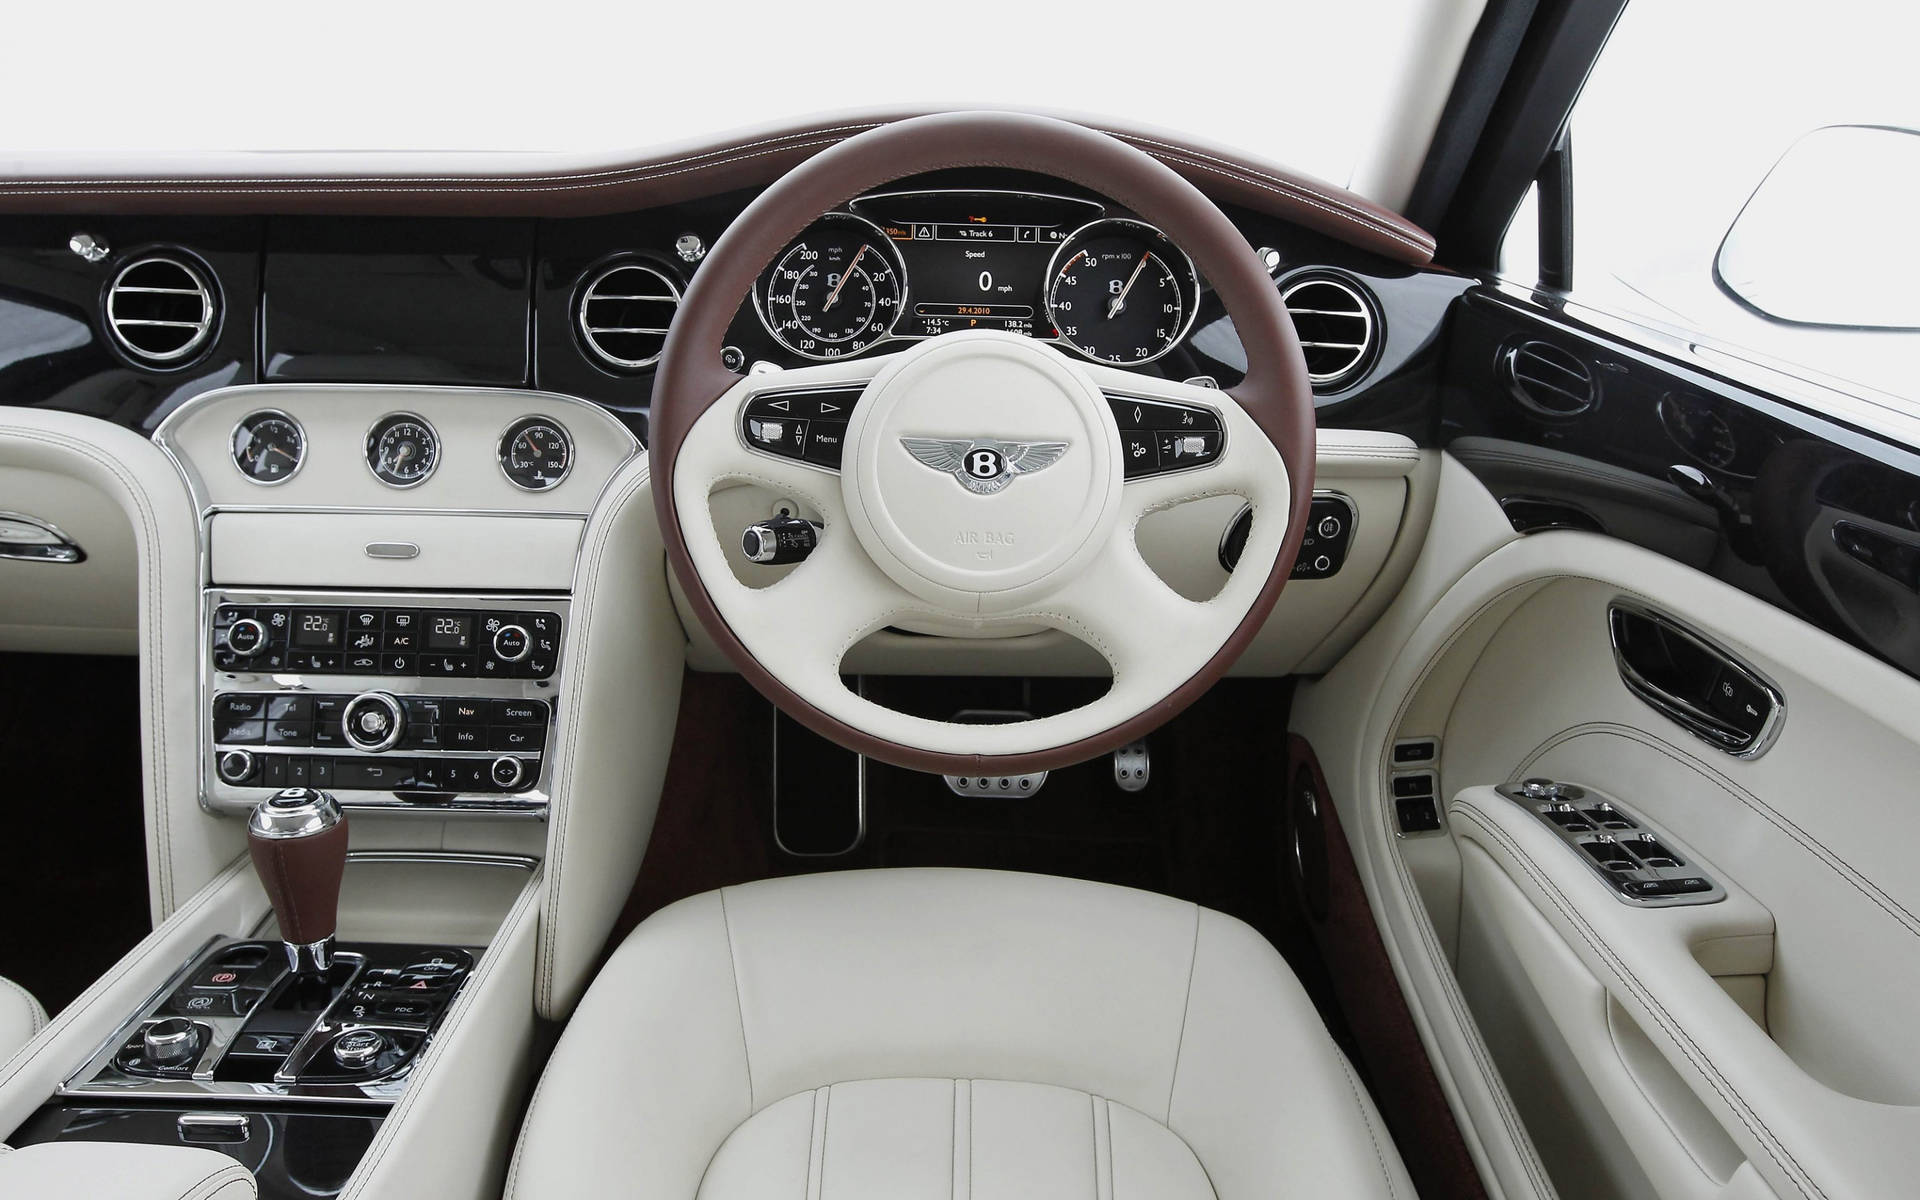 Interiordel Automóvil Bentley Hd Fondo de pantalla